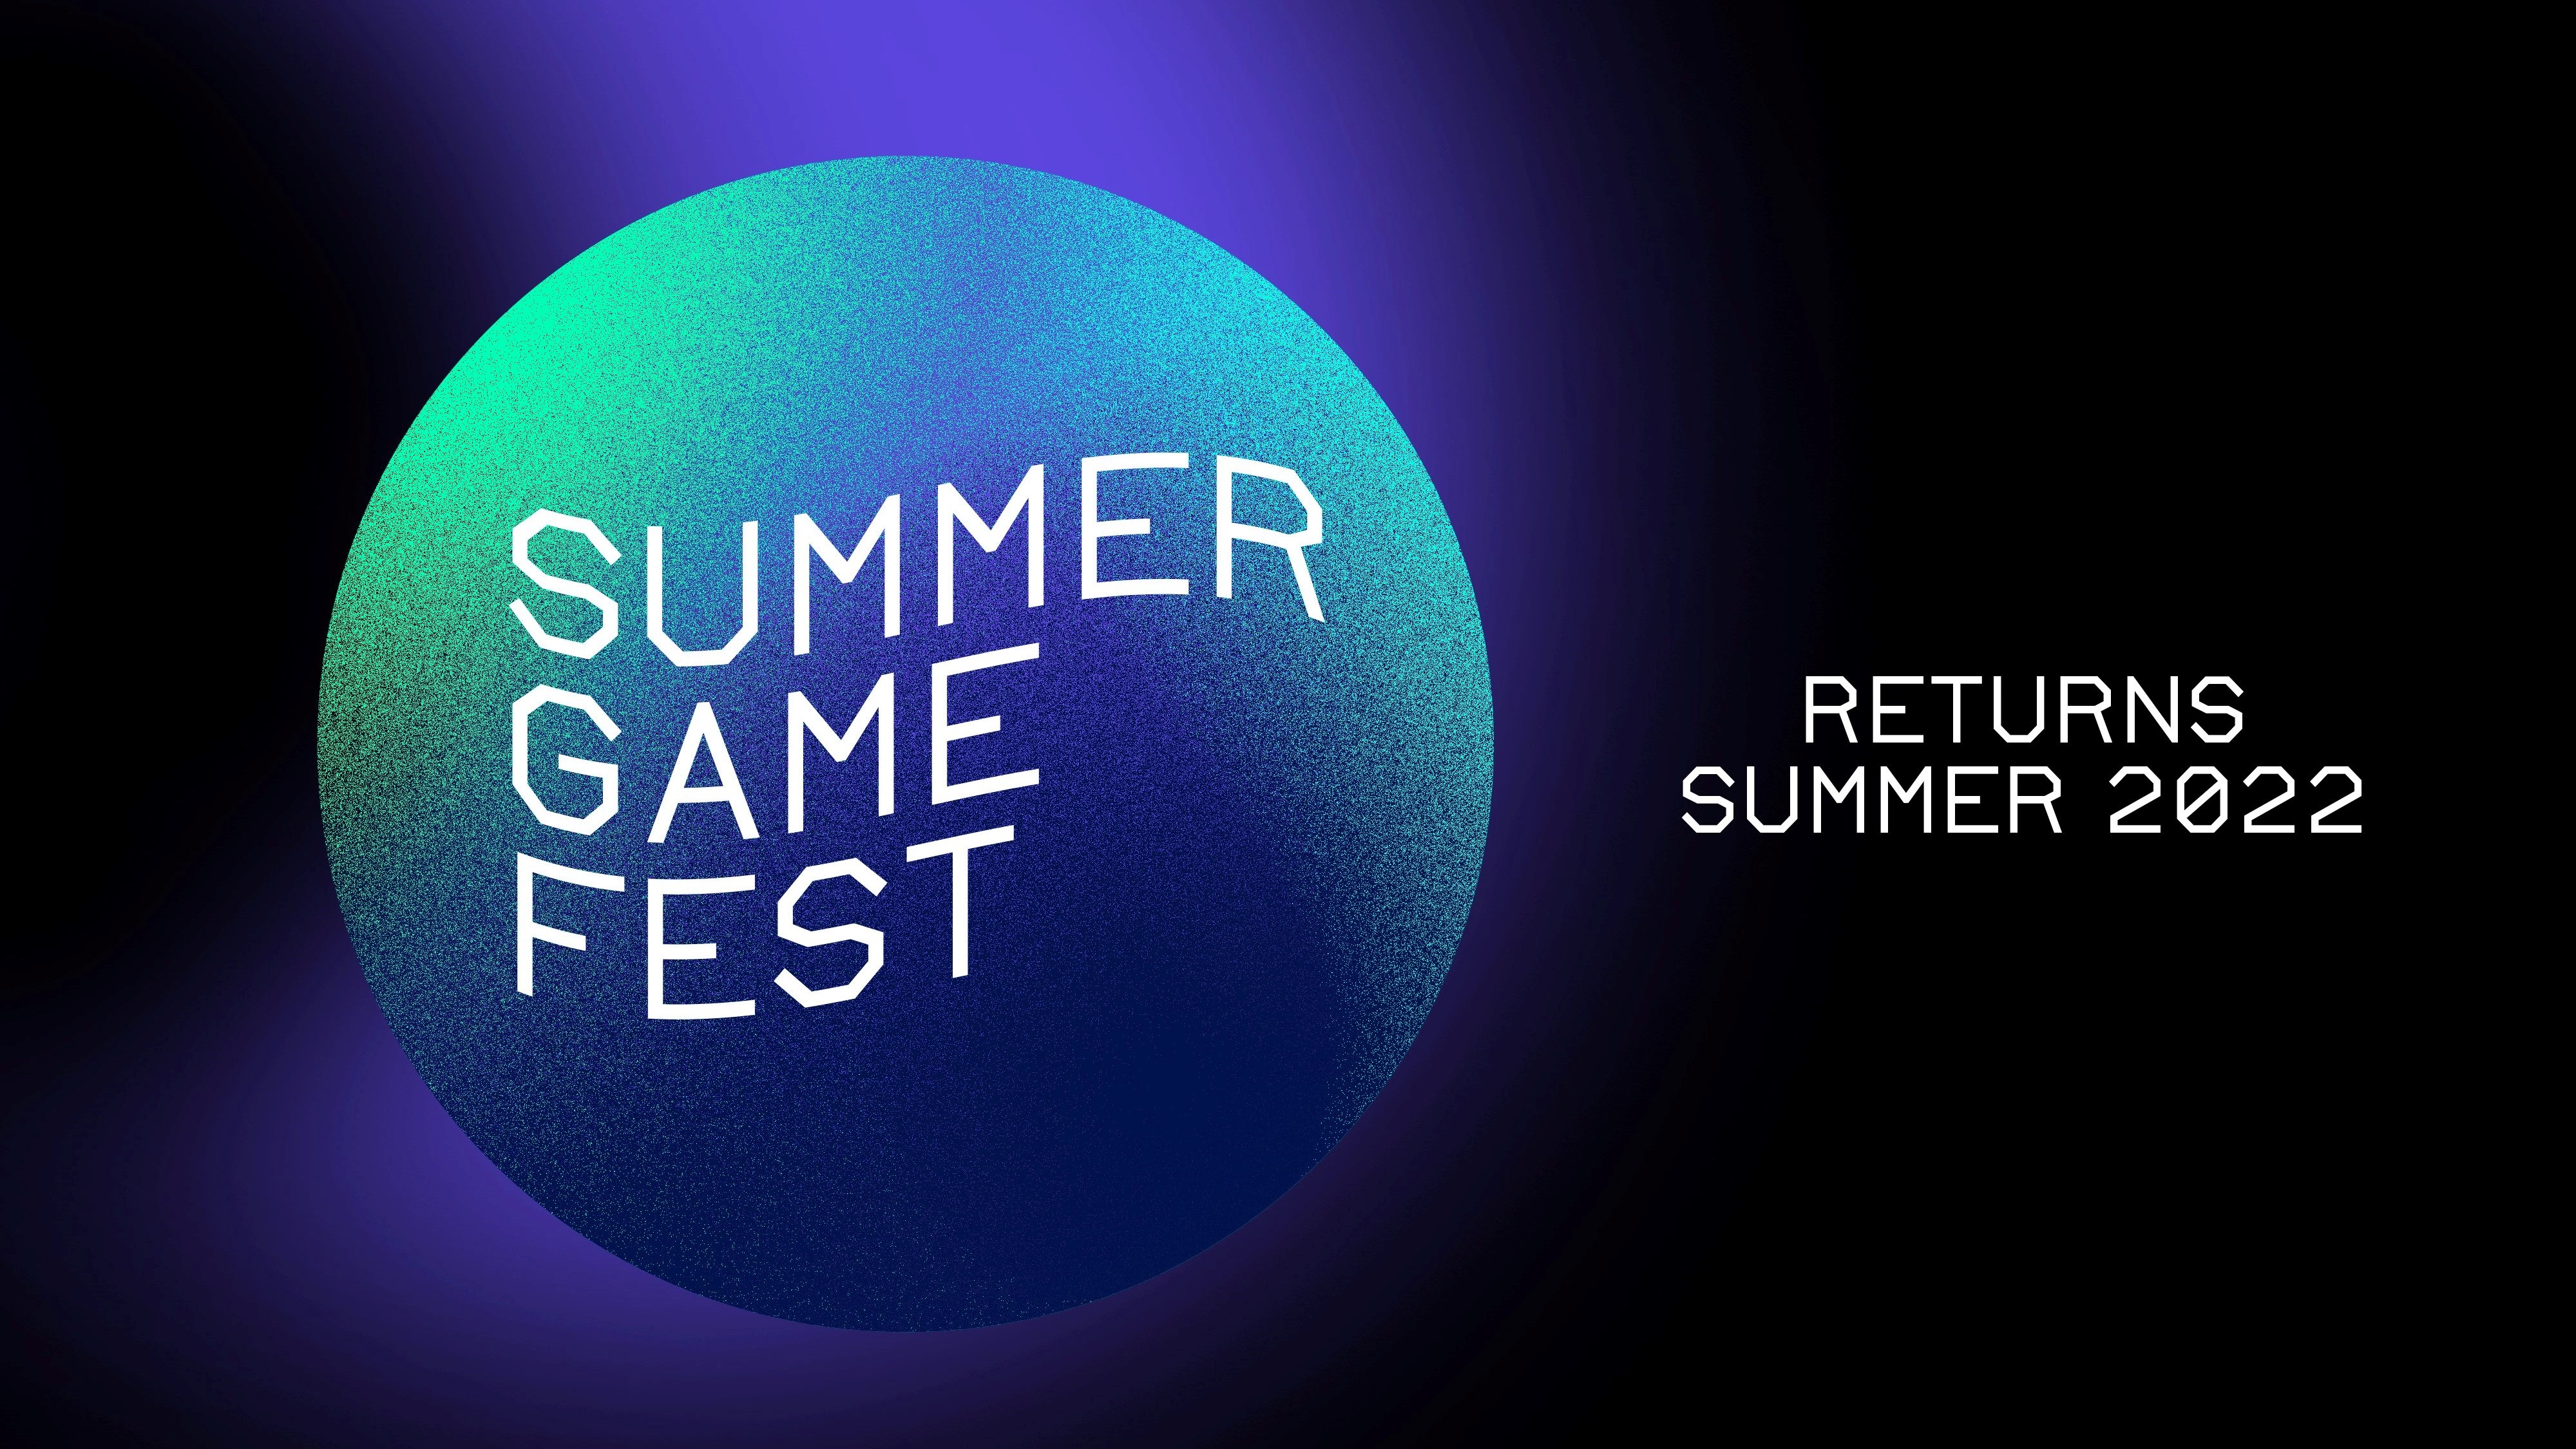 Summer Game Fest returns 2022